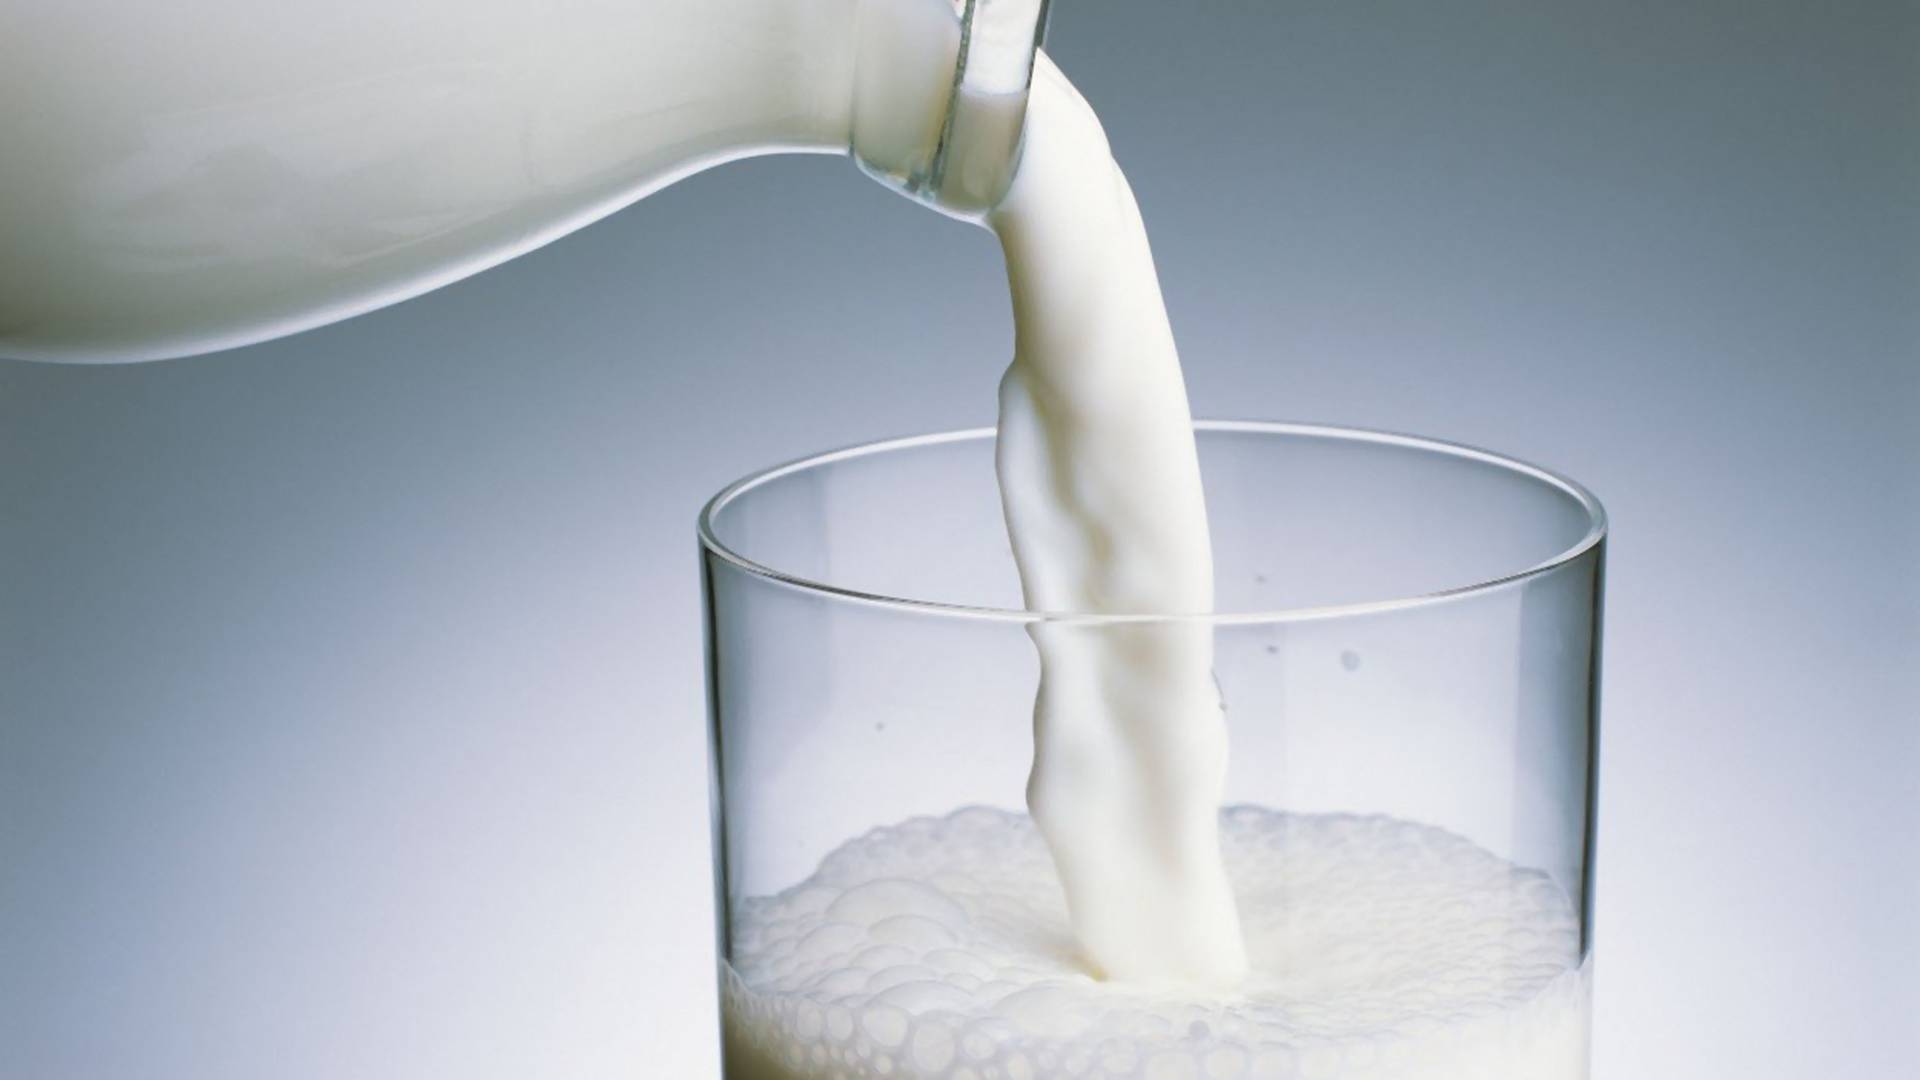 Šta stvarno znači kad mleko ima 1,8 ili 2,8 posto mlečne masti?